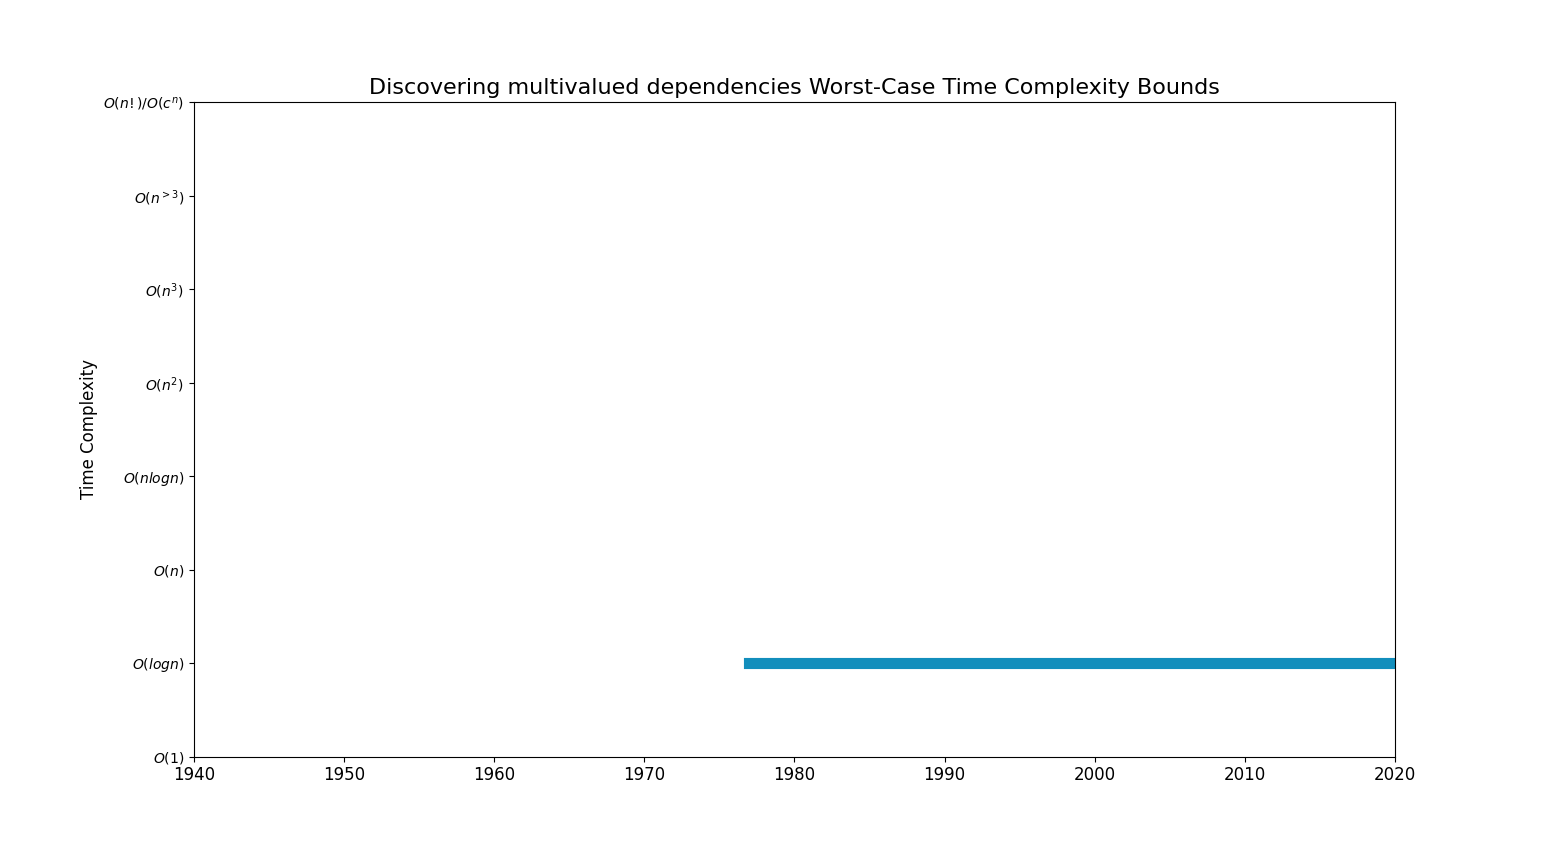 Discovering multivalued dependenciesBoundsChart.png